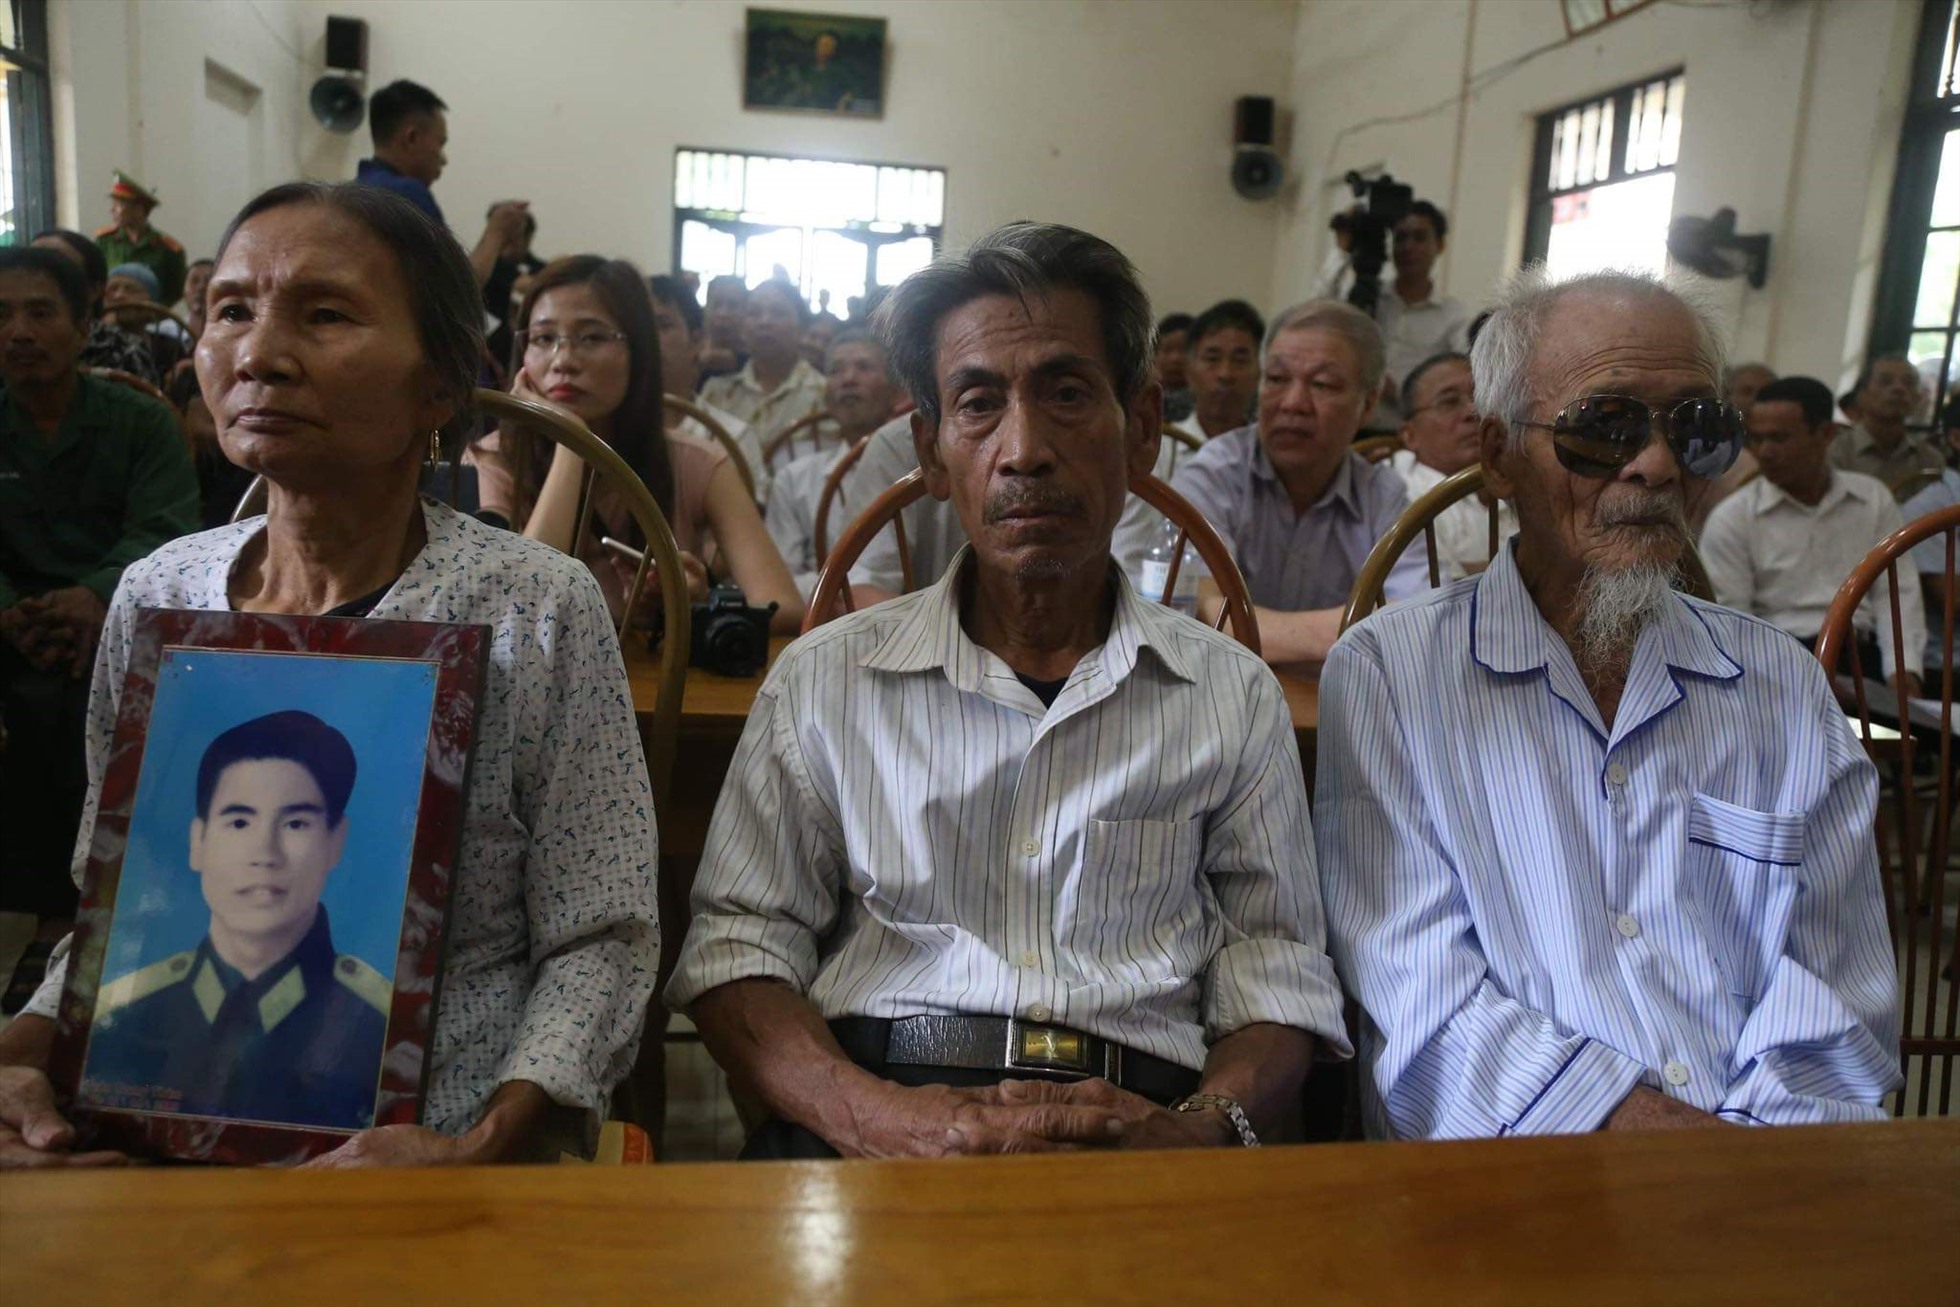 Vợ ông Trần Trung Thám ôm di ảnh của chồng ngồi cạnh ông Trần Ngọc Chinh (giữa) và ông Khổng Văn Đệ tại buổi cải chính công khai hồi tháng 10/2019. Ảnh: Người dân cung cấp